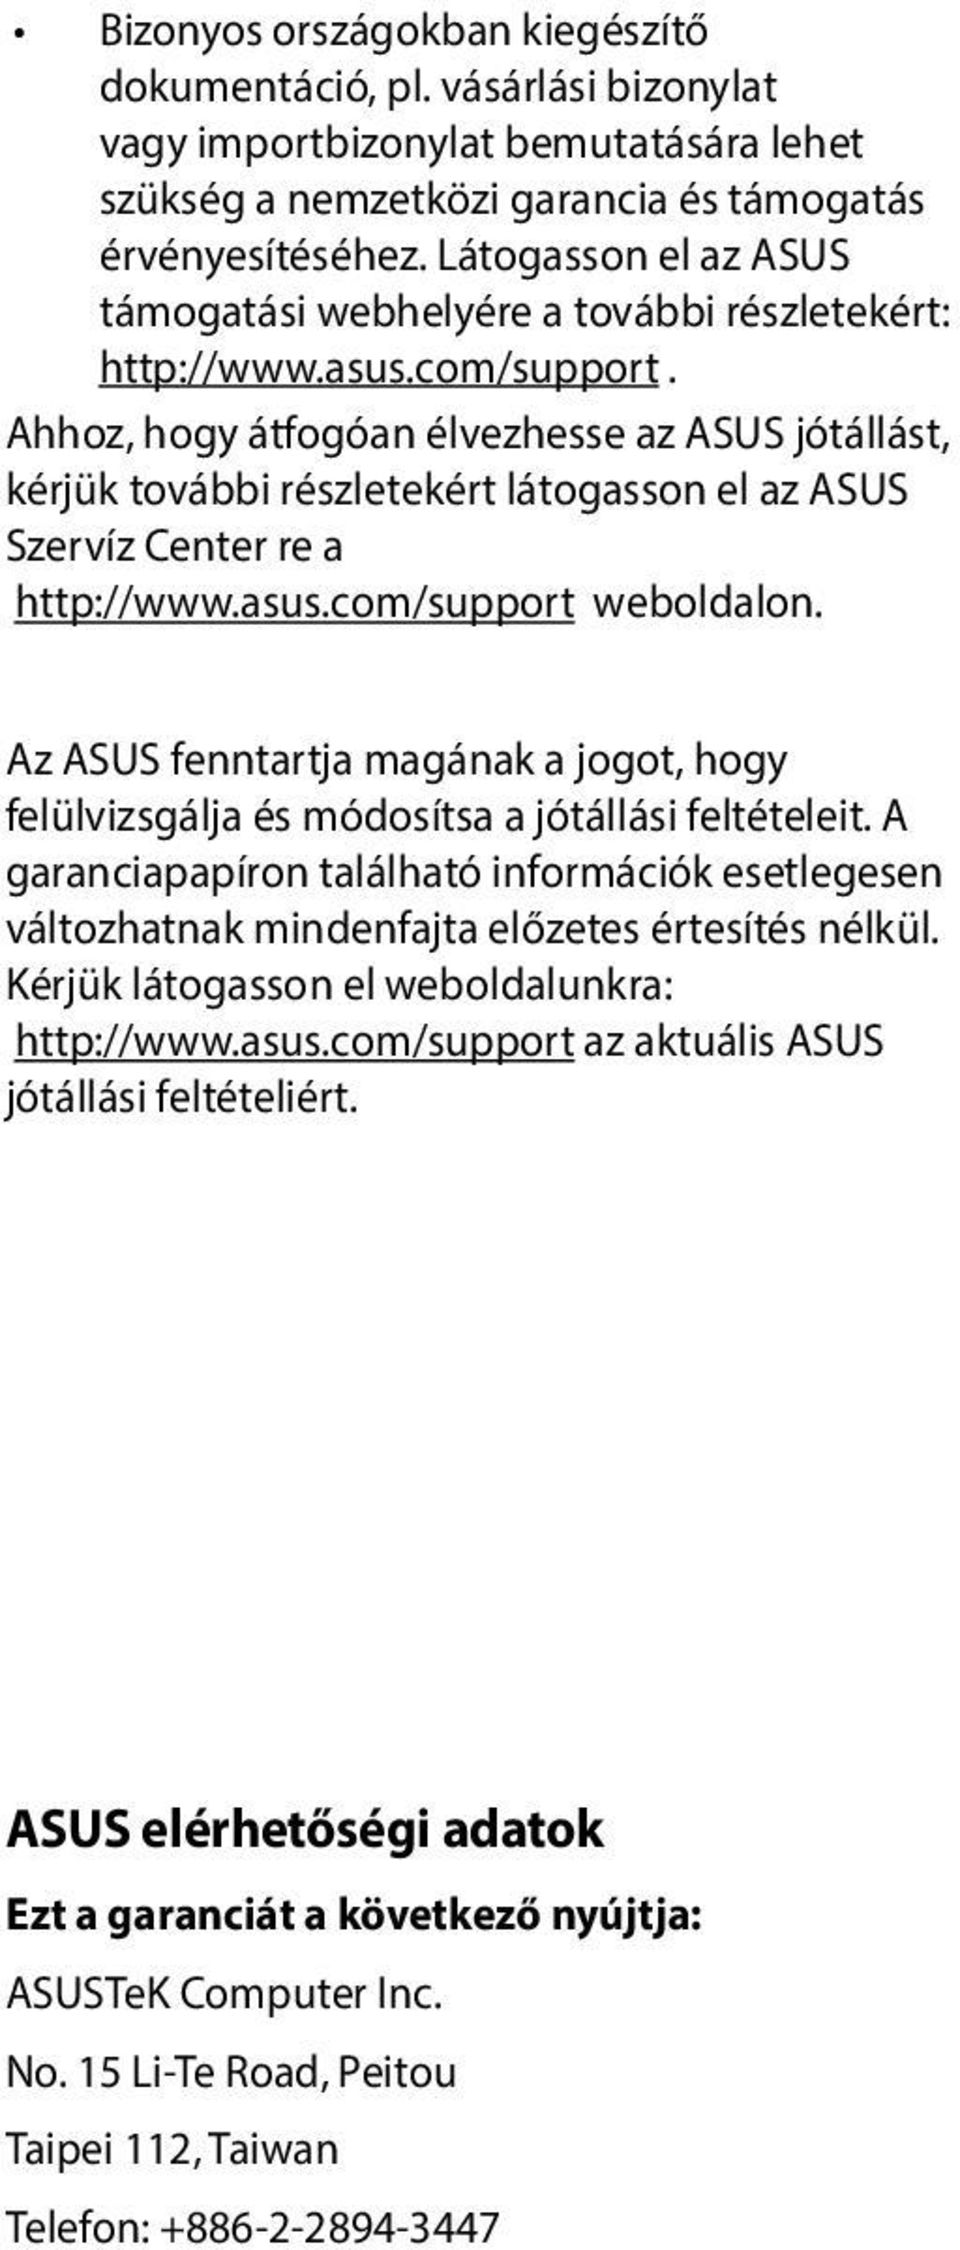 Ahhoz, hogy átfogóan élvezhesse az ASUS jótállást, kérjük további részletekért látogasson el az ASUS Szervíz Center re a http://www.asus.com/support weboldalon.